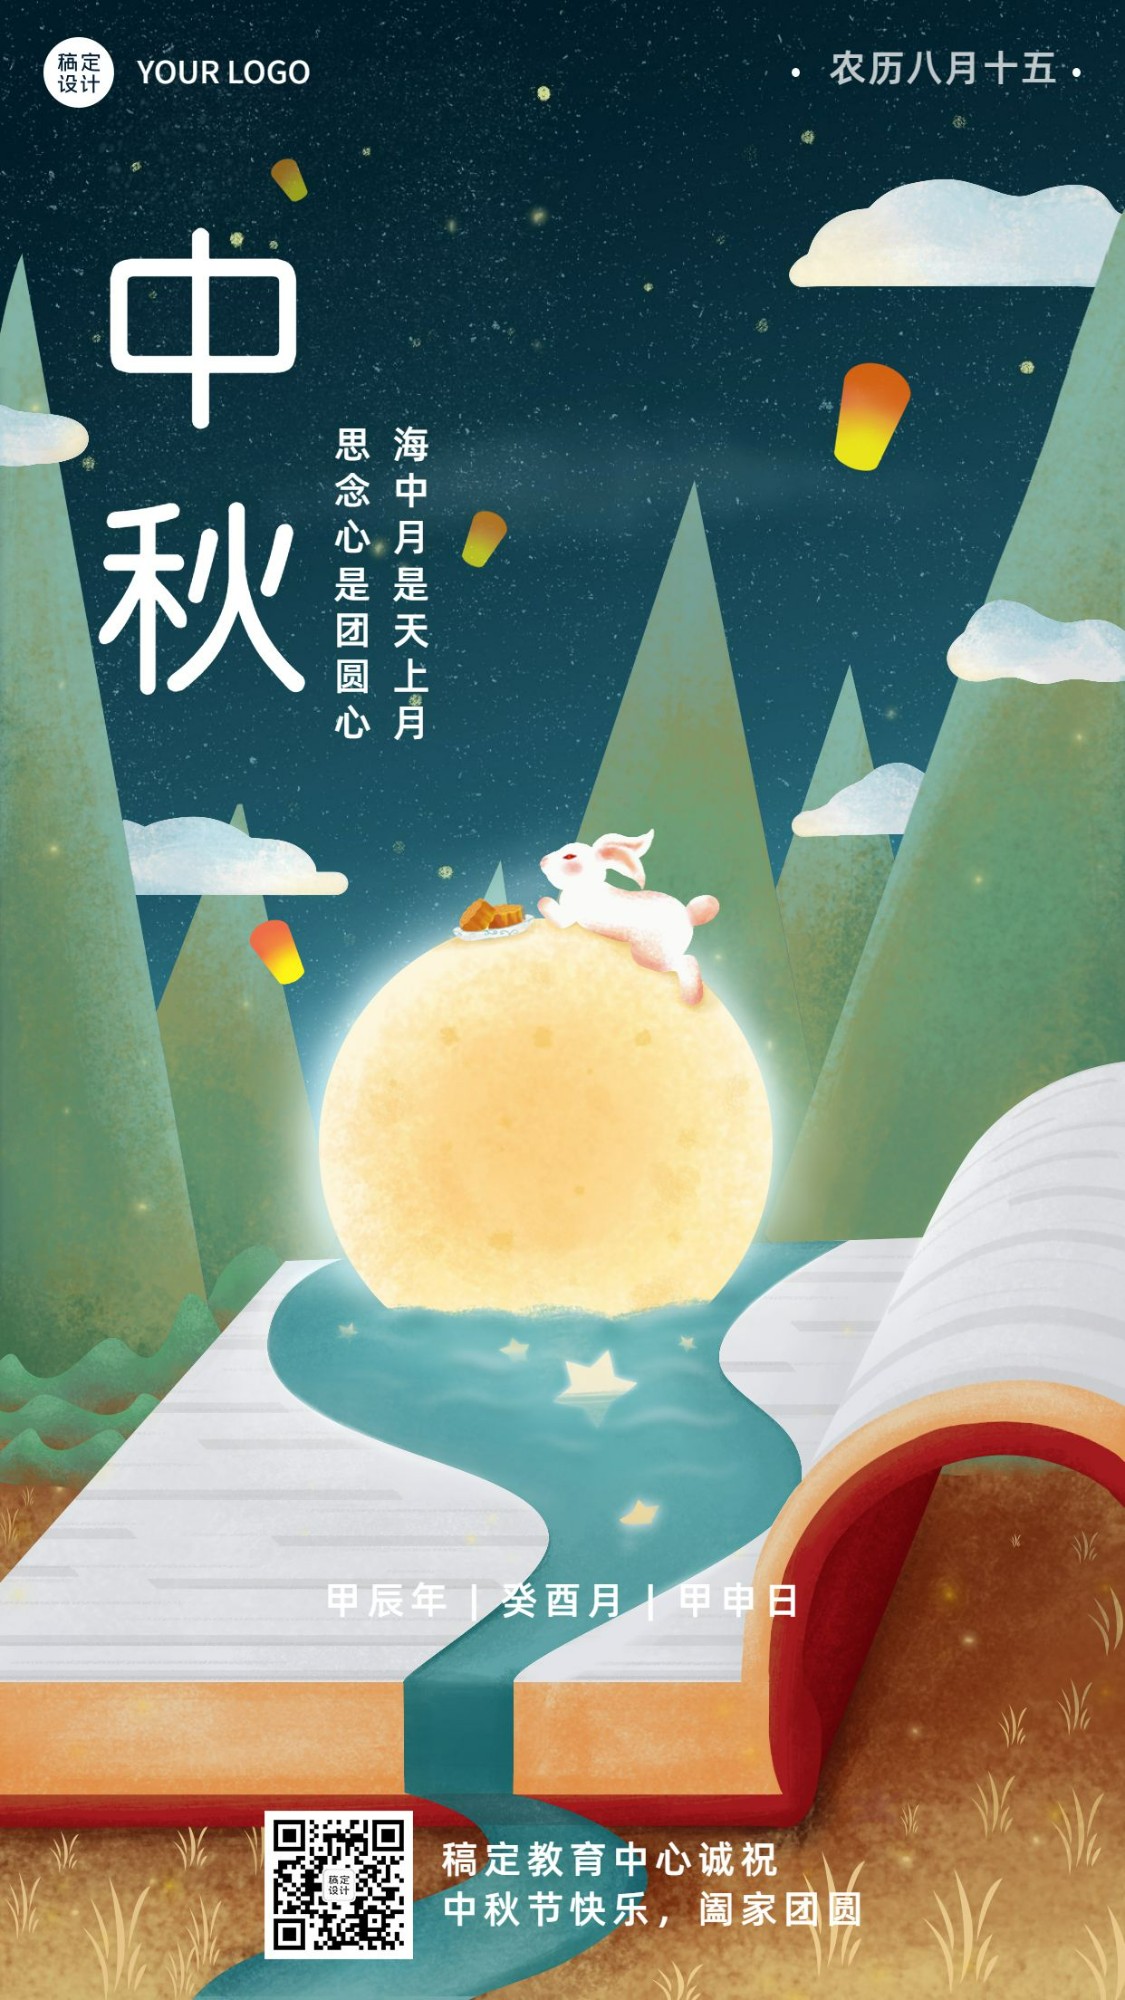 中秋节祝福手绘唯美创意竖版海报预览效果